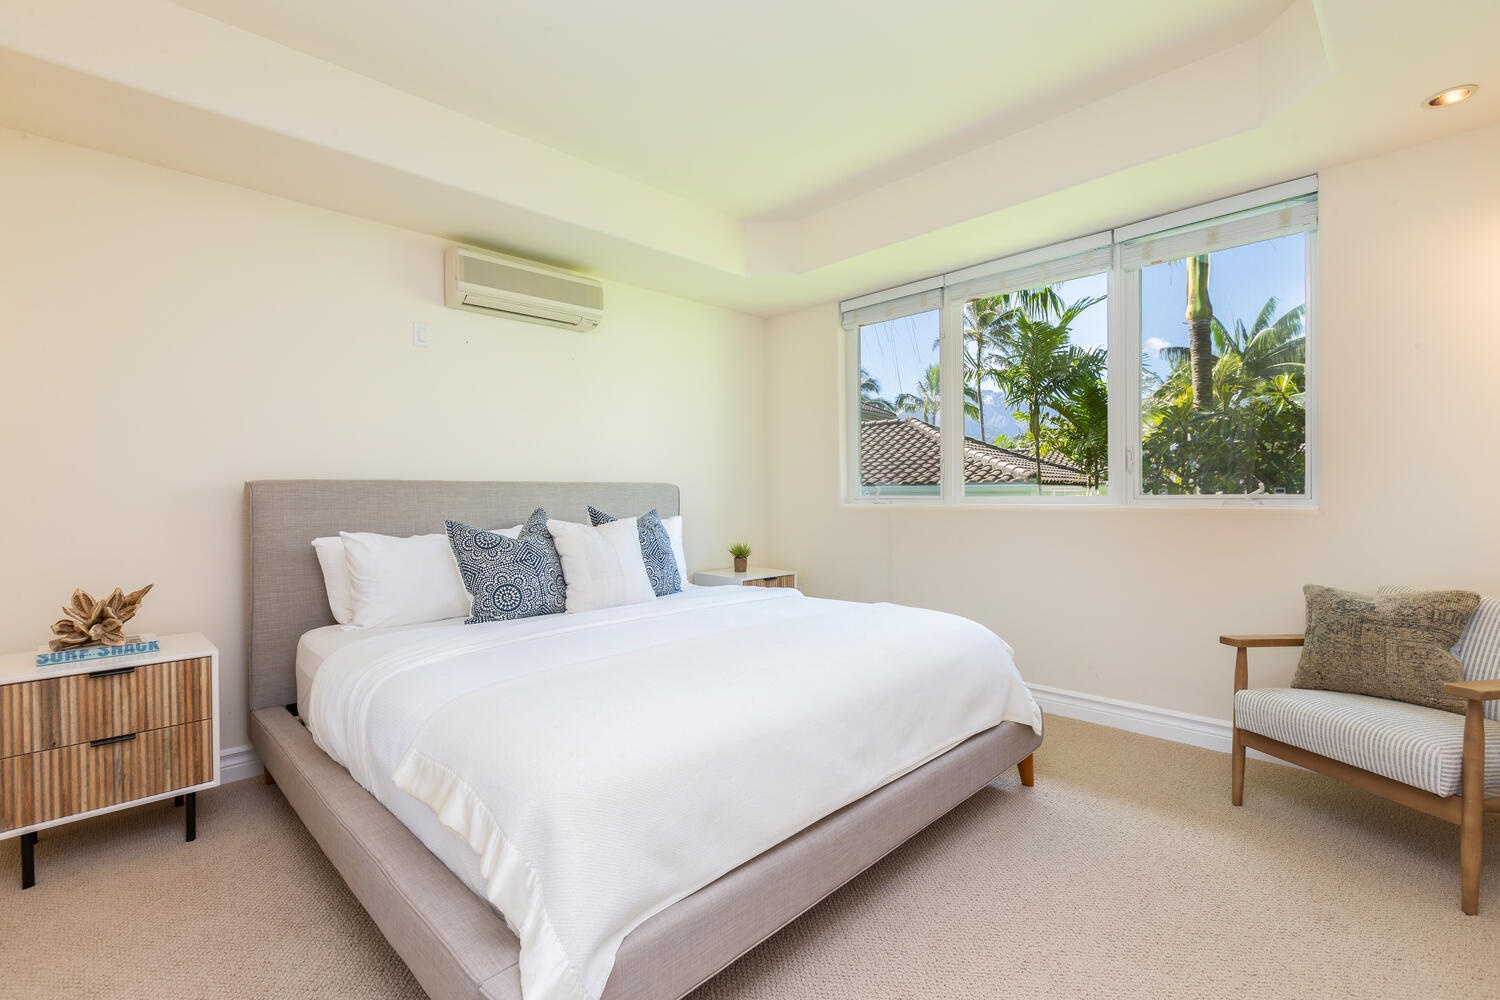 Princeville Vacation Rentals, Kai Naia Hale - Guest bedroom with en-suite bathroom